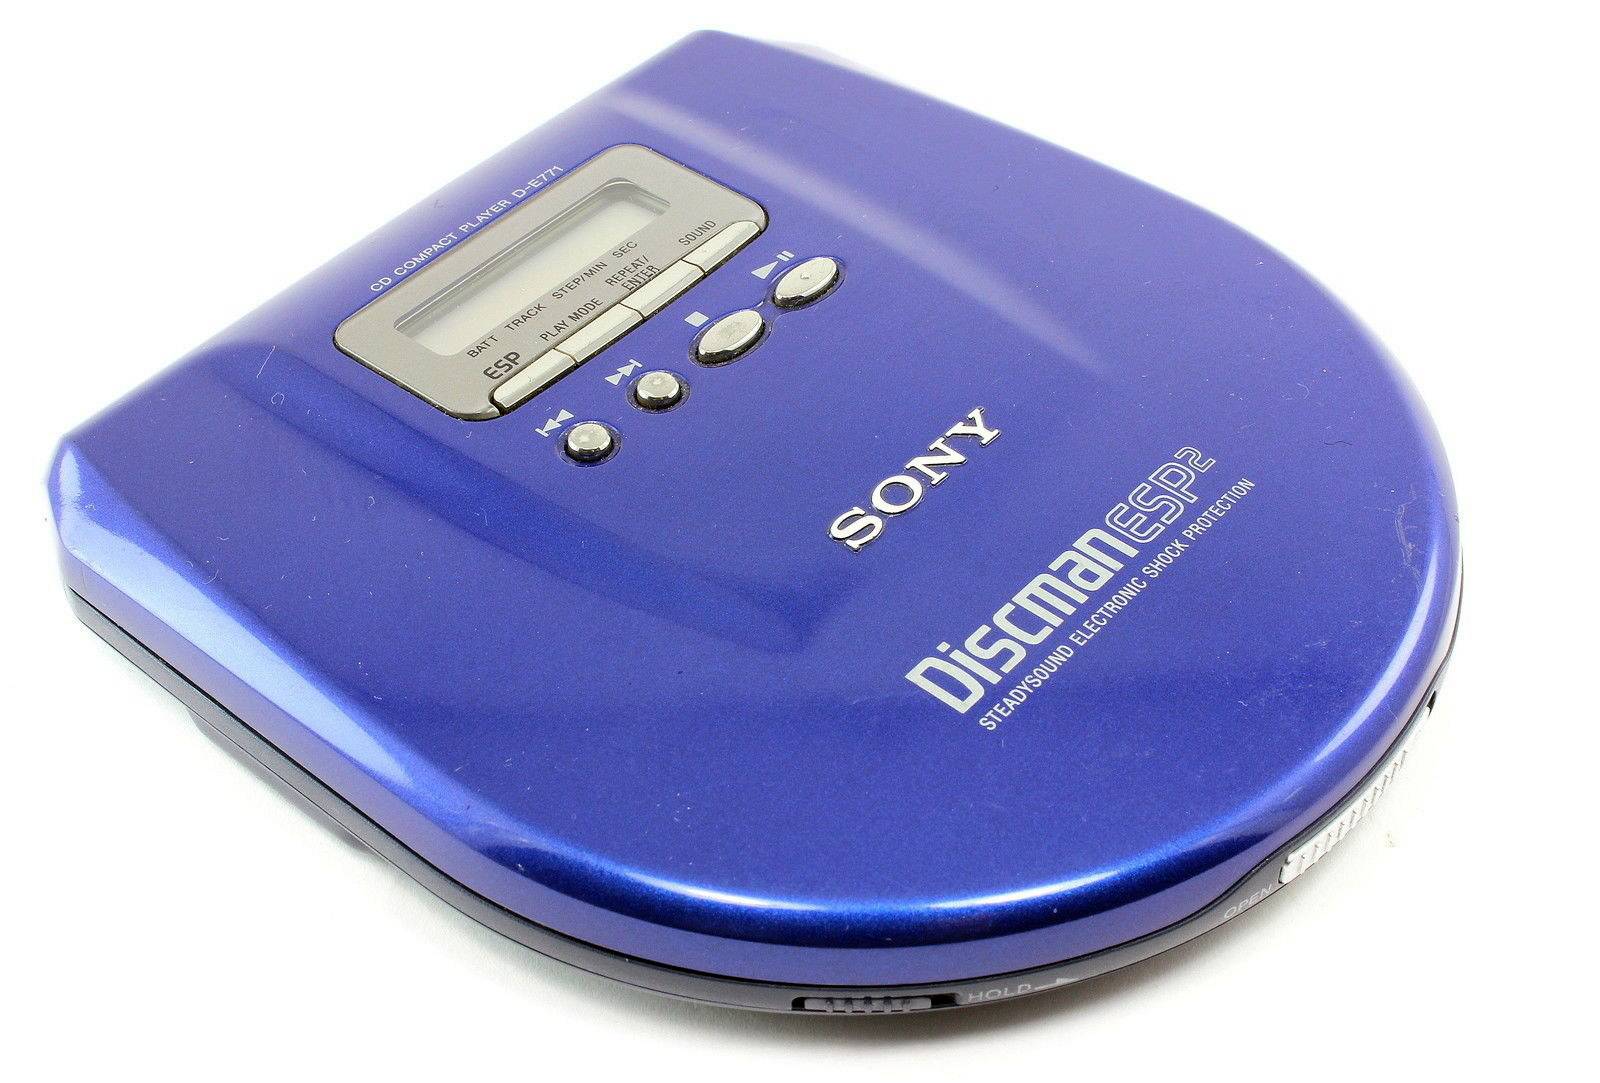 Sony D-E771